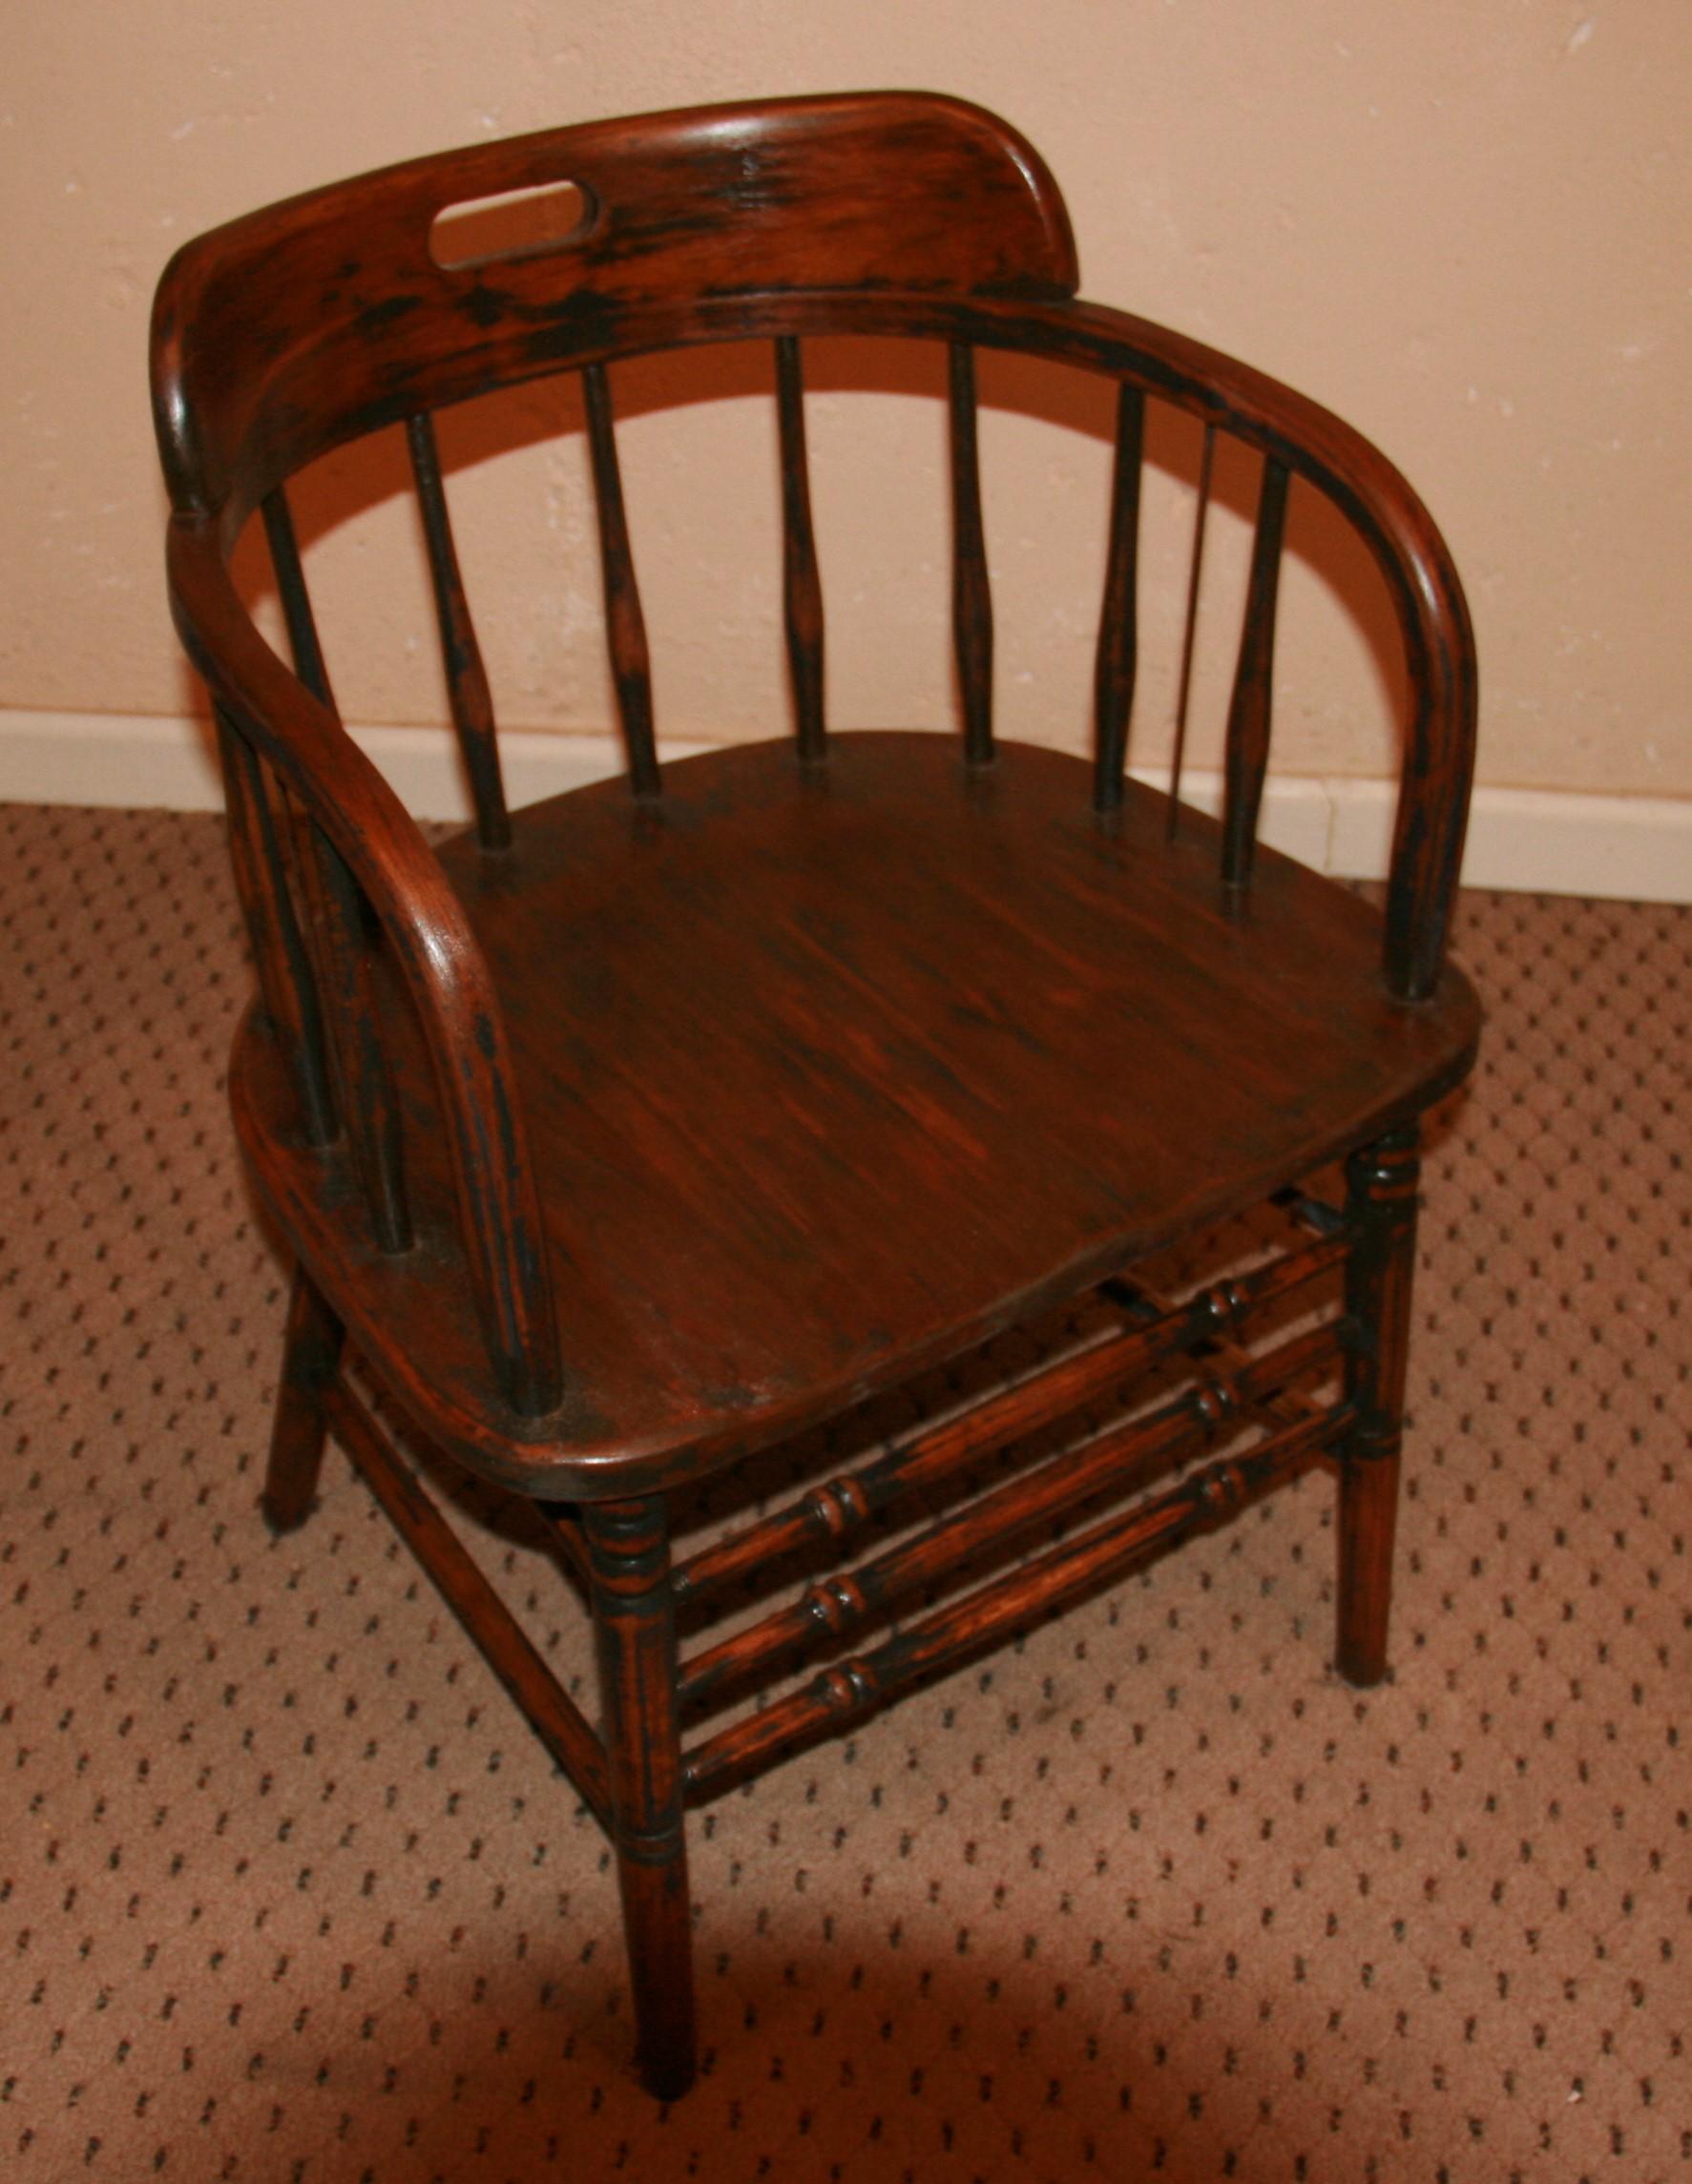 Chaise anglaise en bois dur avec dossier en forme de tonneau, support d'accoudoirs courbés, assise sellée, pieds et brancards tournés, belle couleur